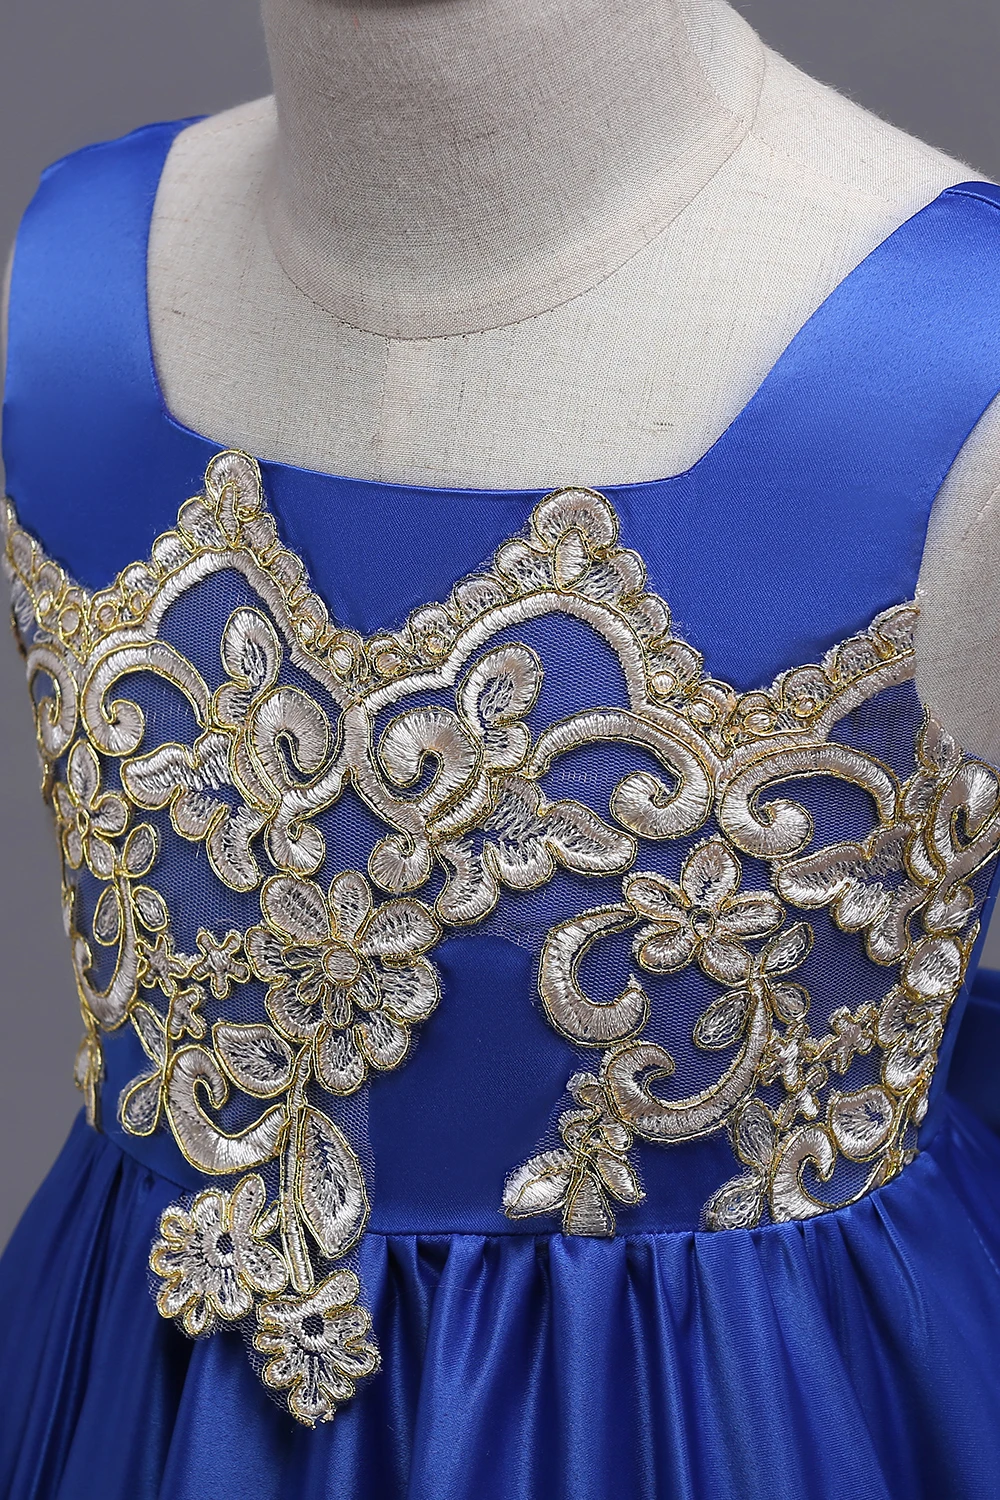 Королевское синее длинное летнее платье Большие банты для девочек в цветочек платья золото аппликацией Праздничное платье для первого причастия